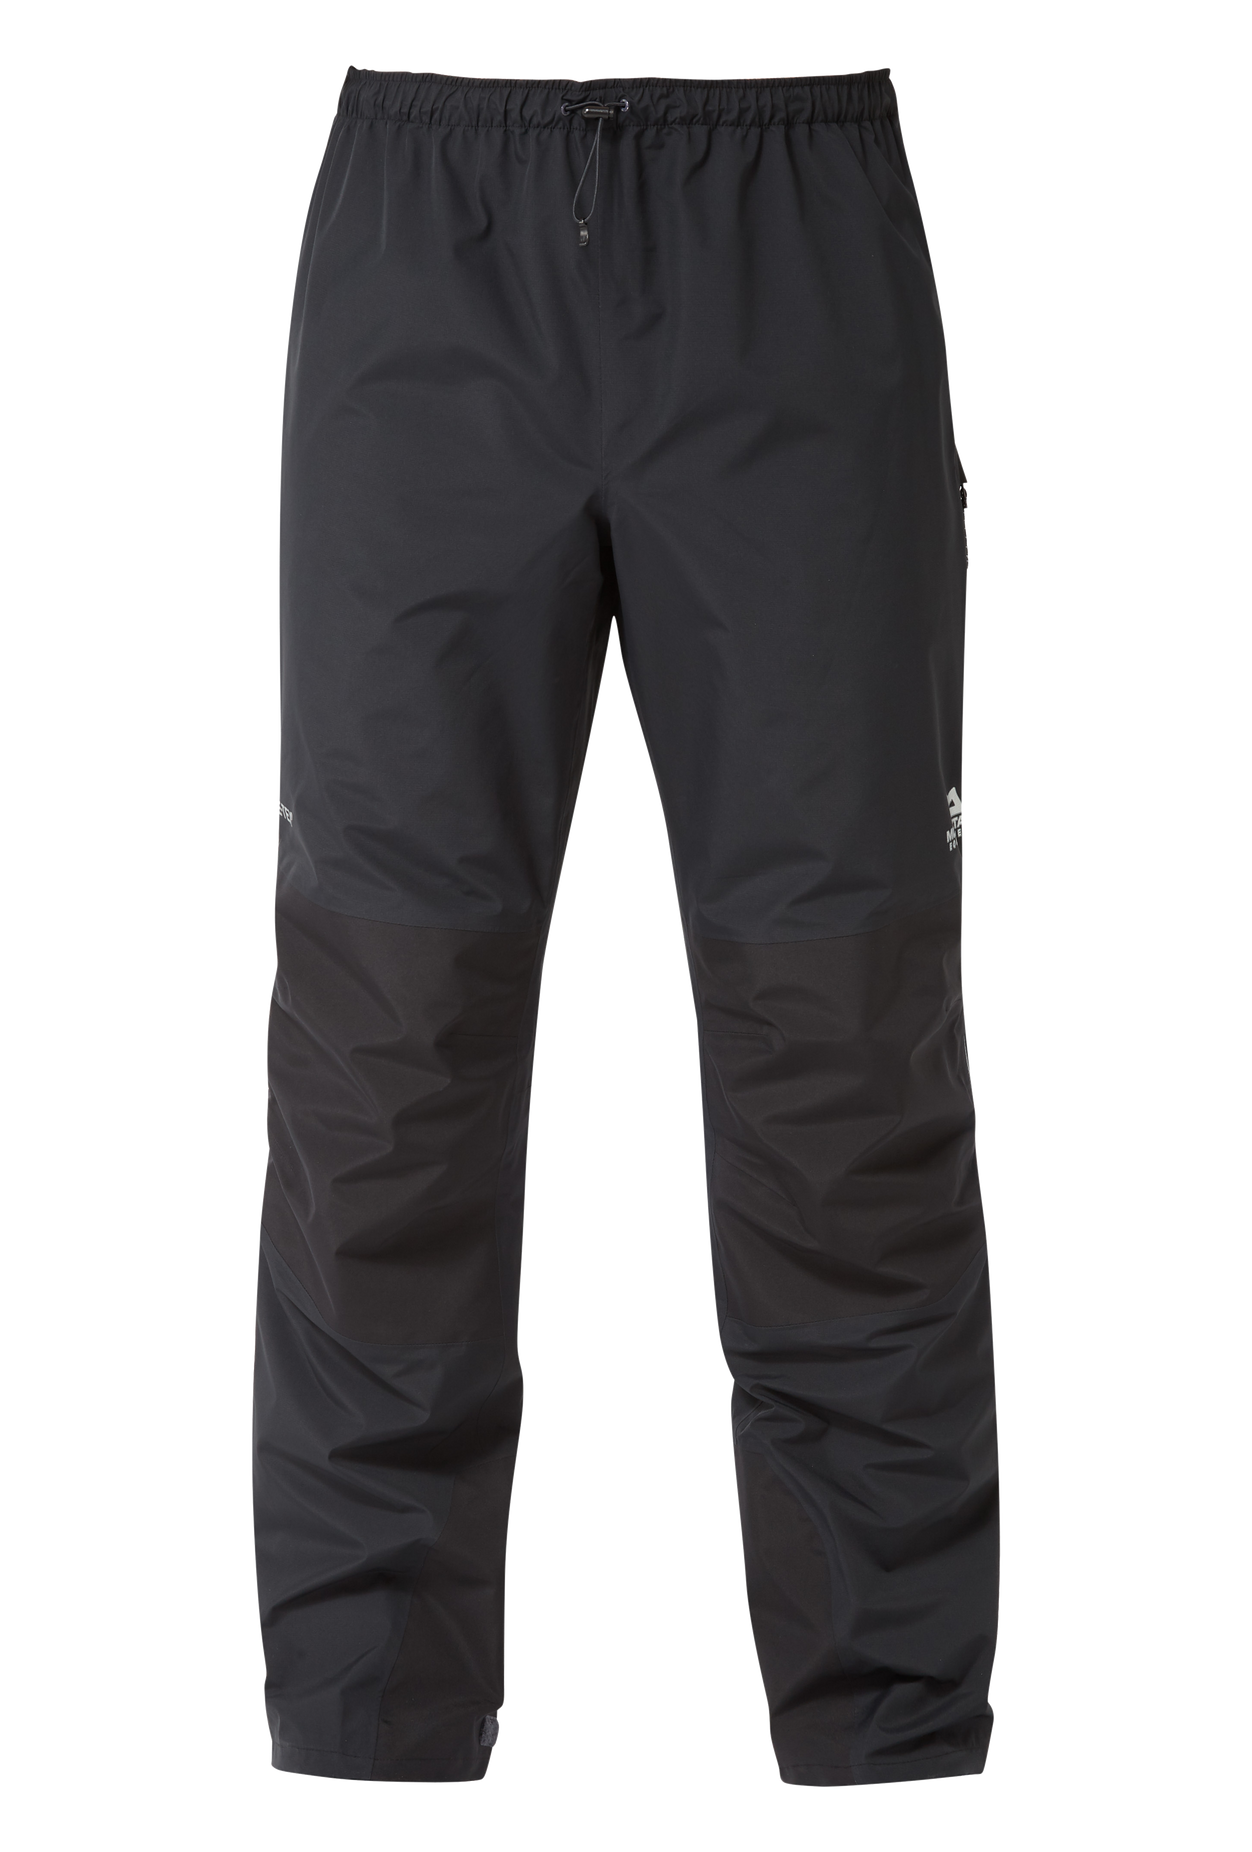 Mountain Equipment pánské nepromokavé kalhoty Saltoro Pant - prodloužené Barva: black, Velikost: S